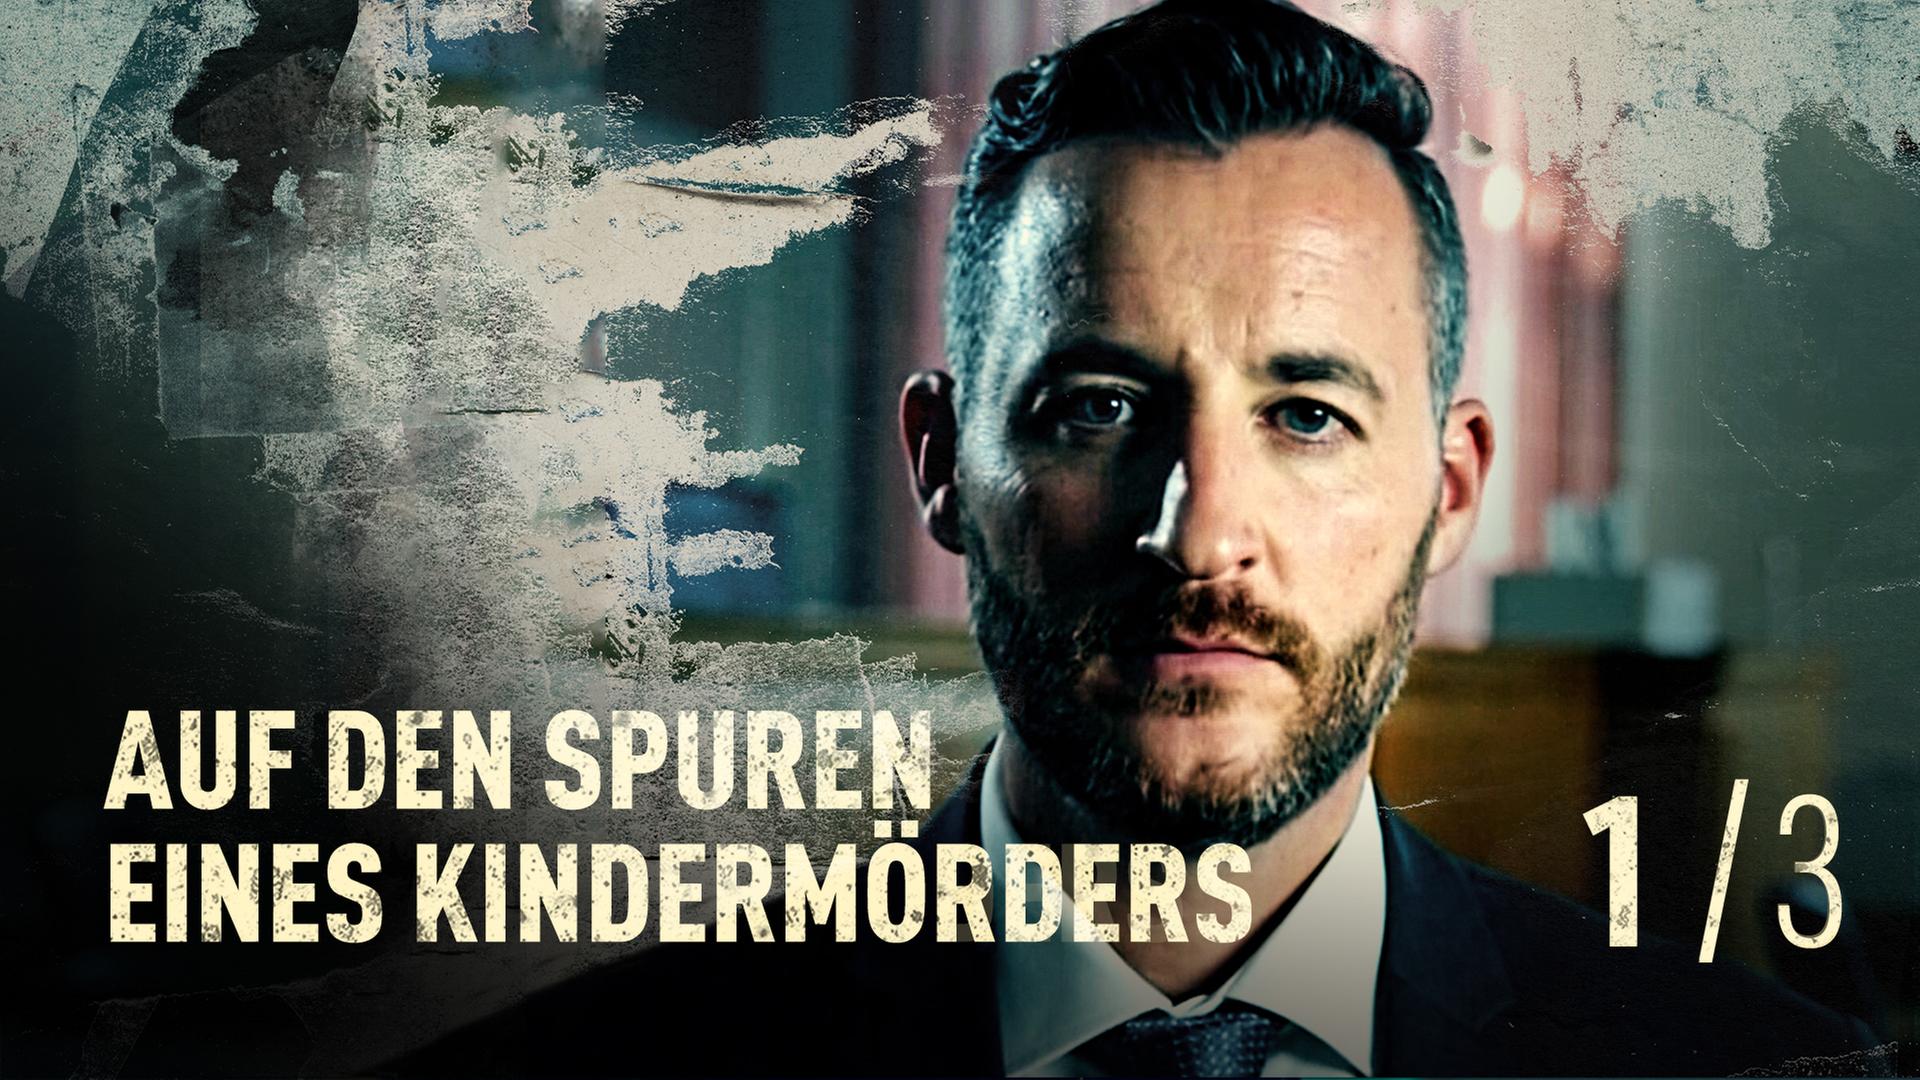 ARD Crime Time: Auf den Spuren eines Kindermörders (S02/E01) | ARD